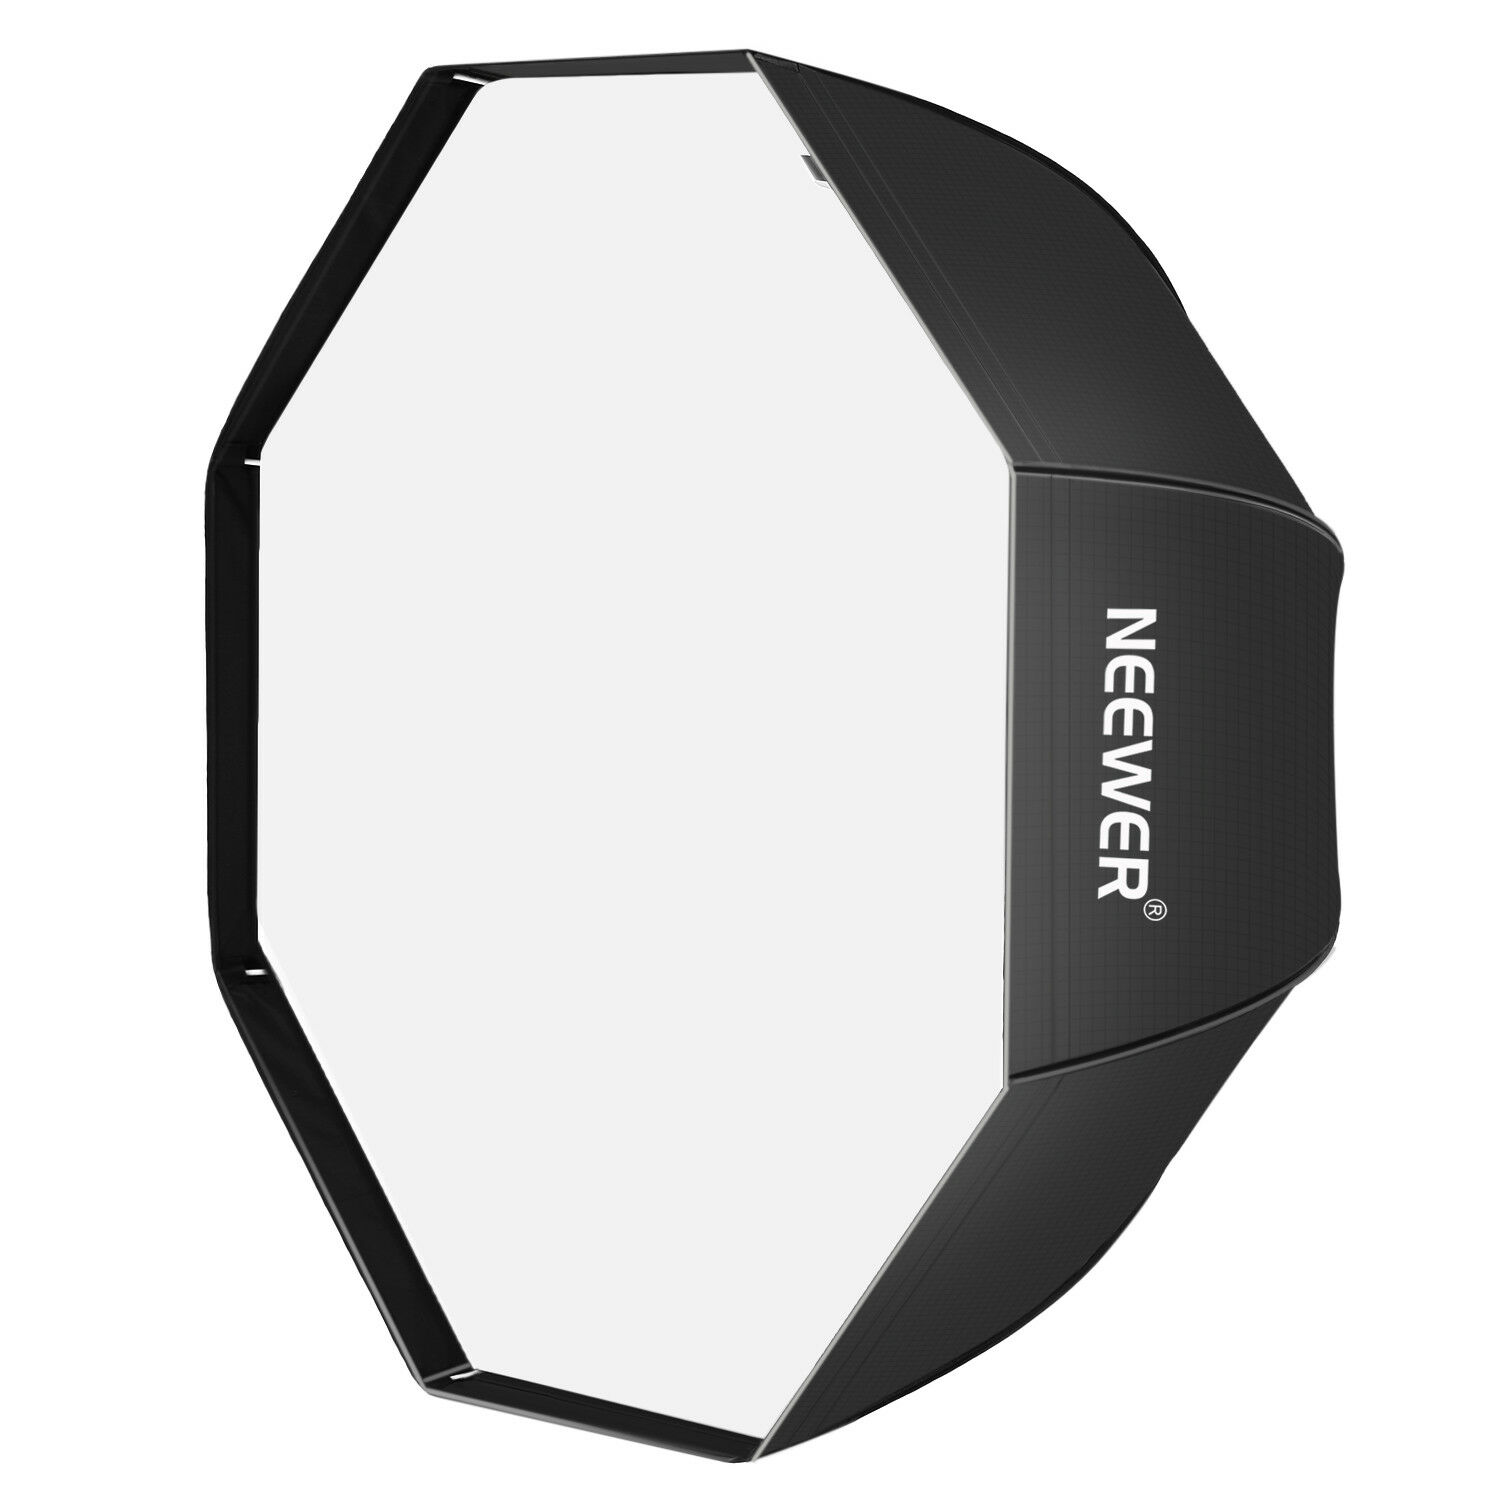 Neewer 45"/116cm Octagonal Umbrella Diffuser Softbox For Studio Flash Speedlite